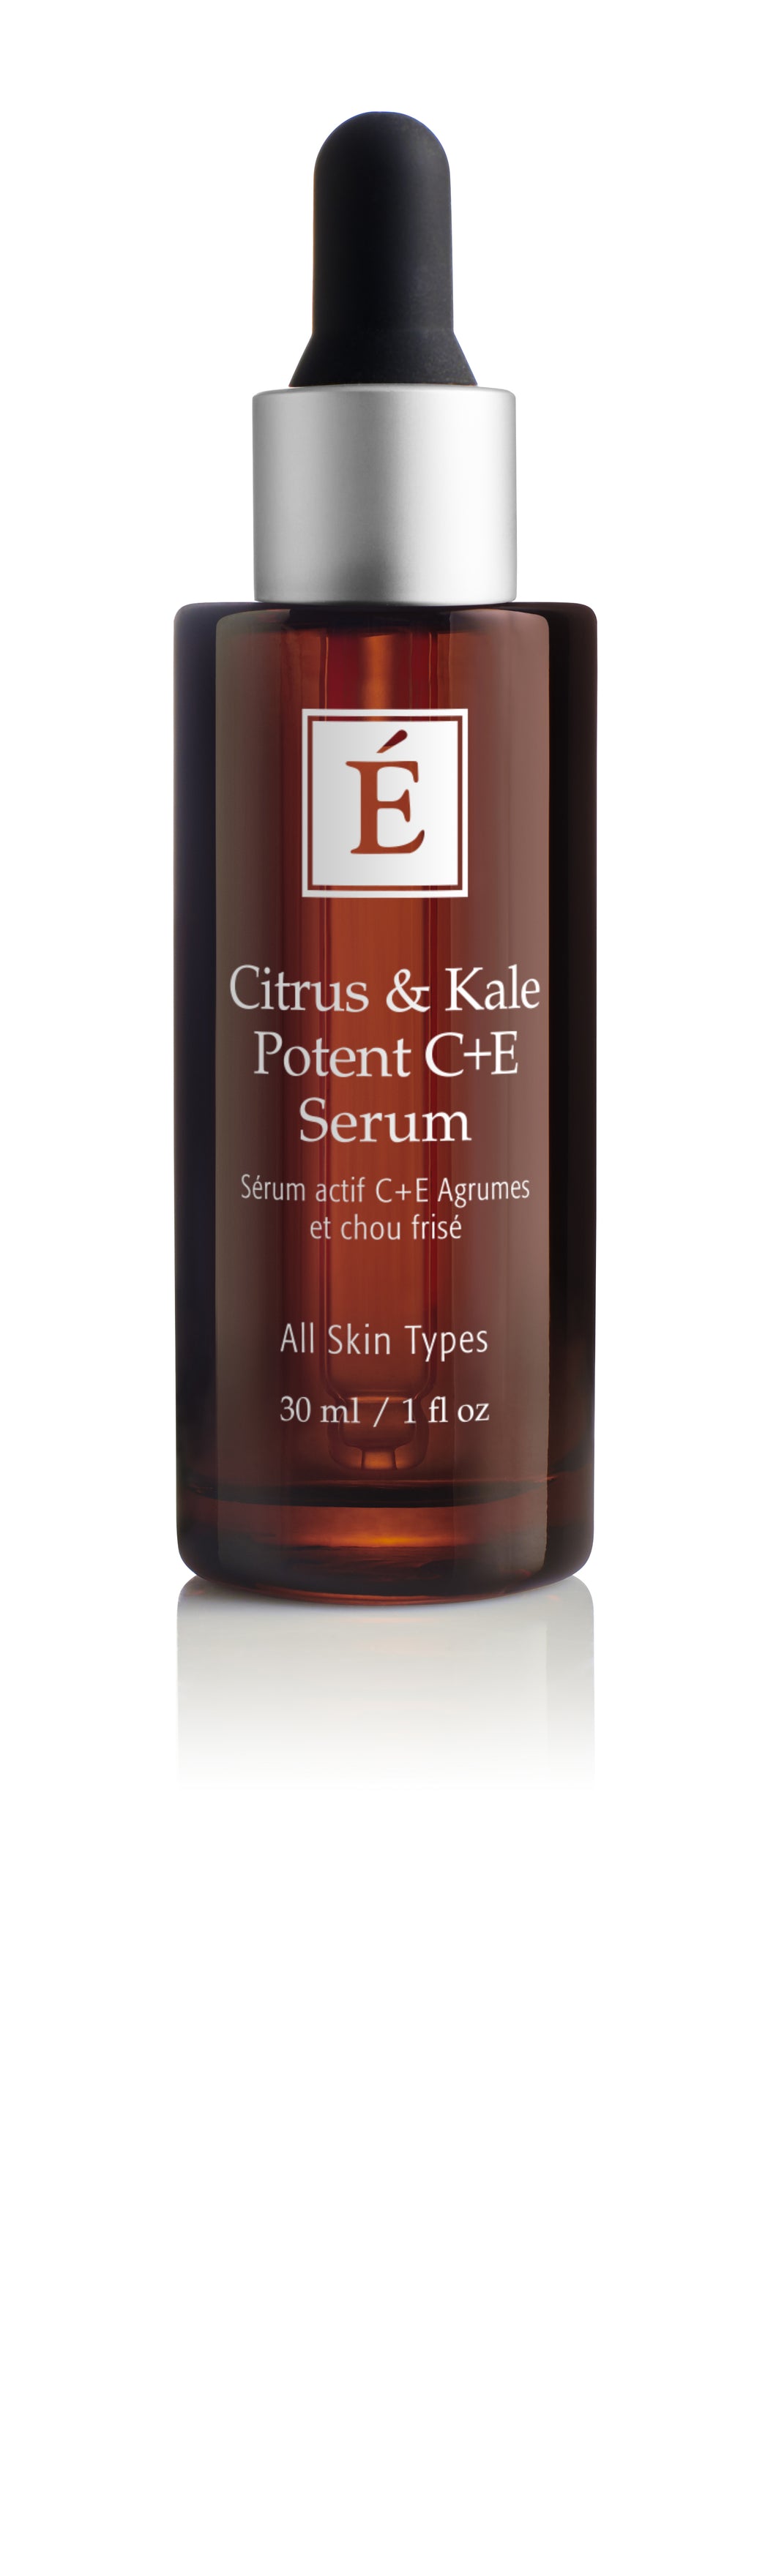 Eminence: Citrus & Kale Potent C+E Serum